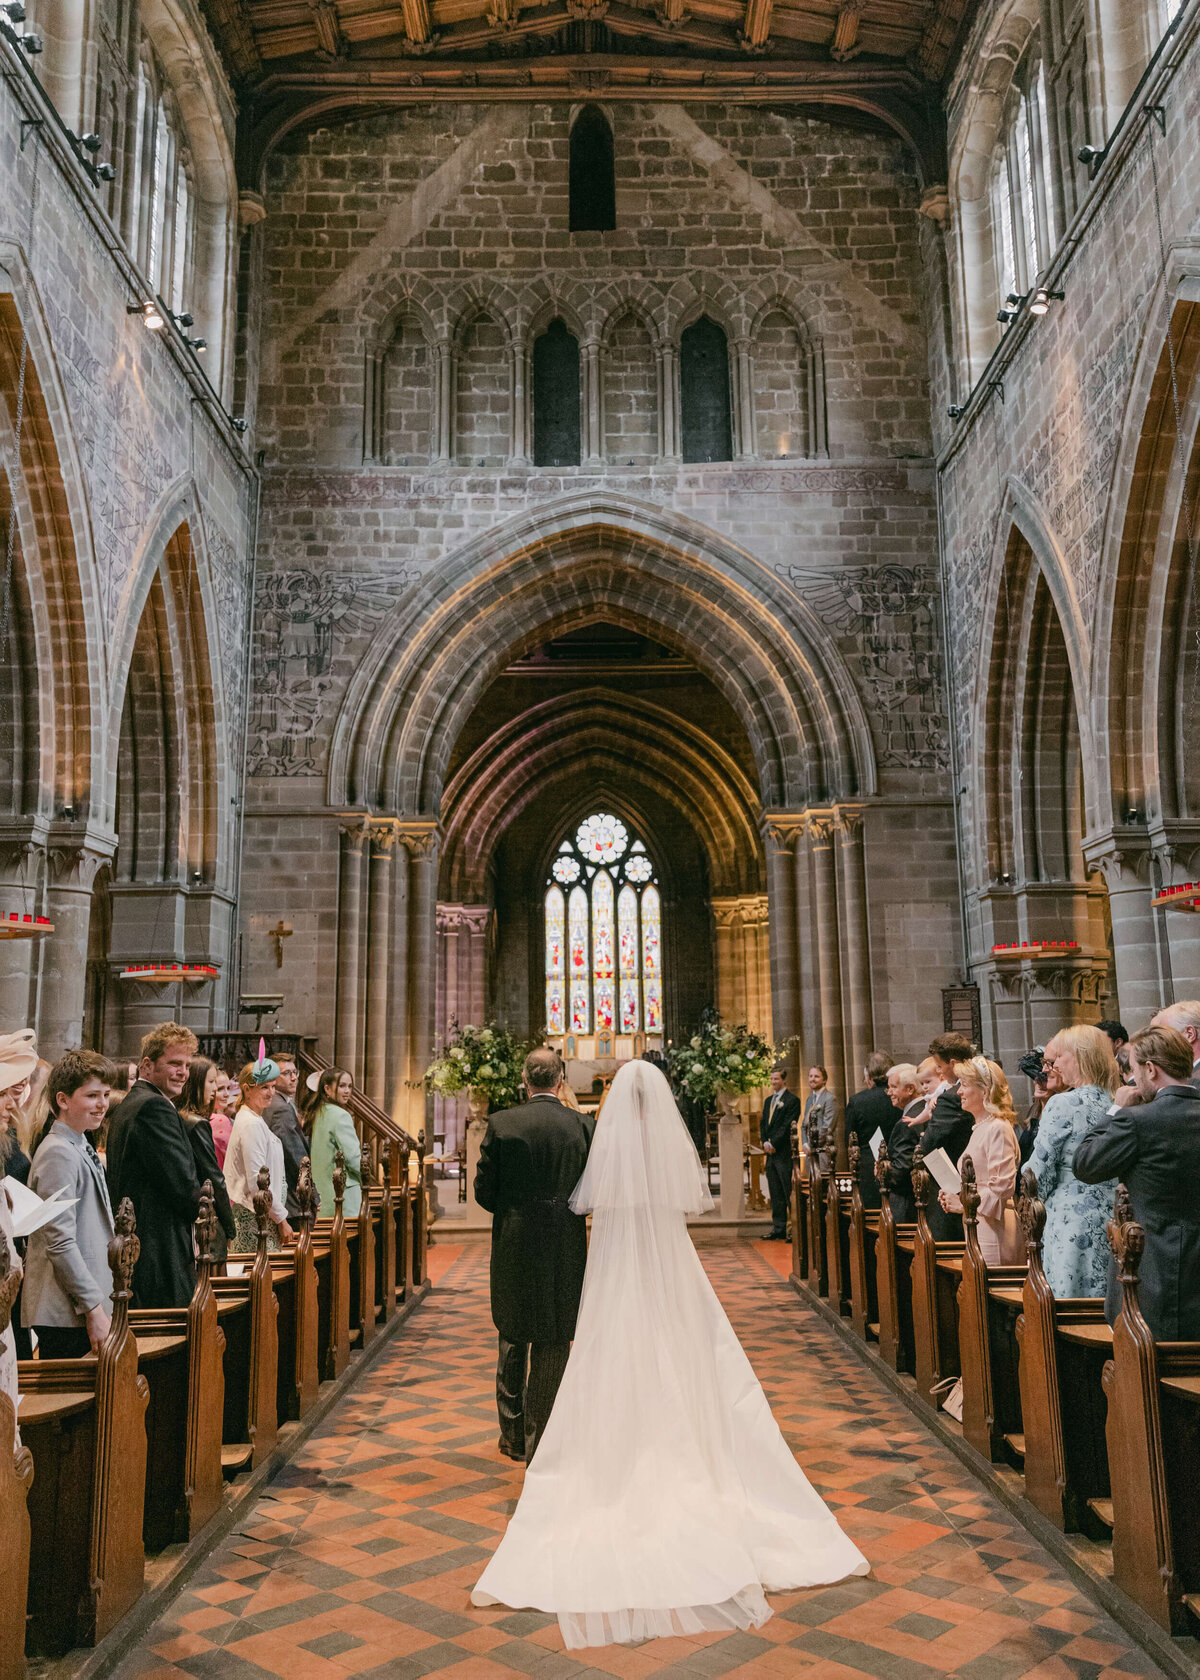 chloe-winstanley-weddings-stafford-church-father-bride-entrance